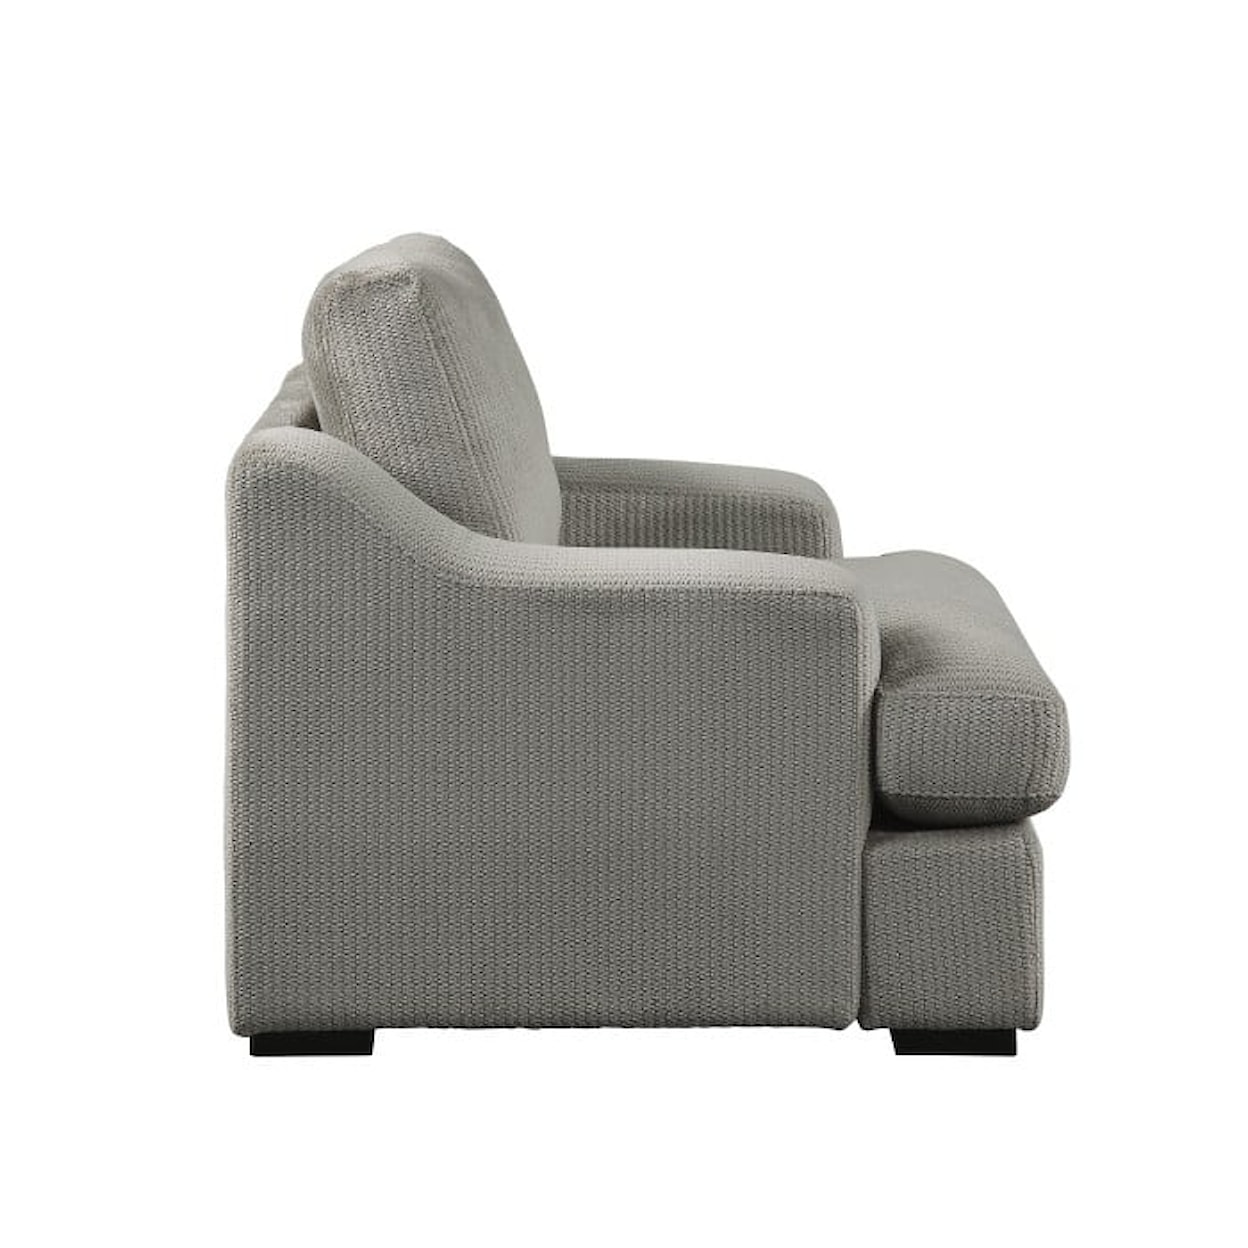 Homelegance Orofino Stationary Living Room Chair